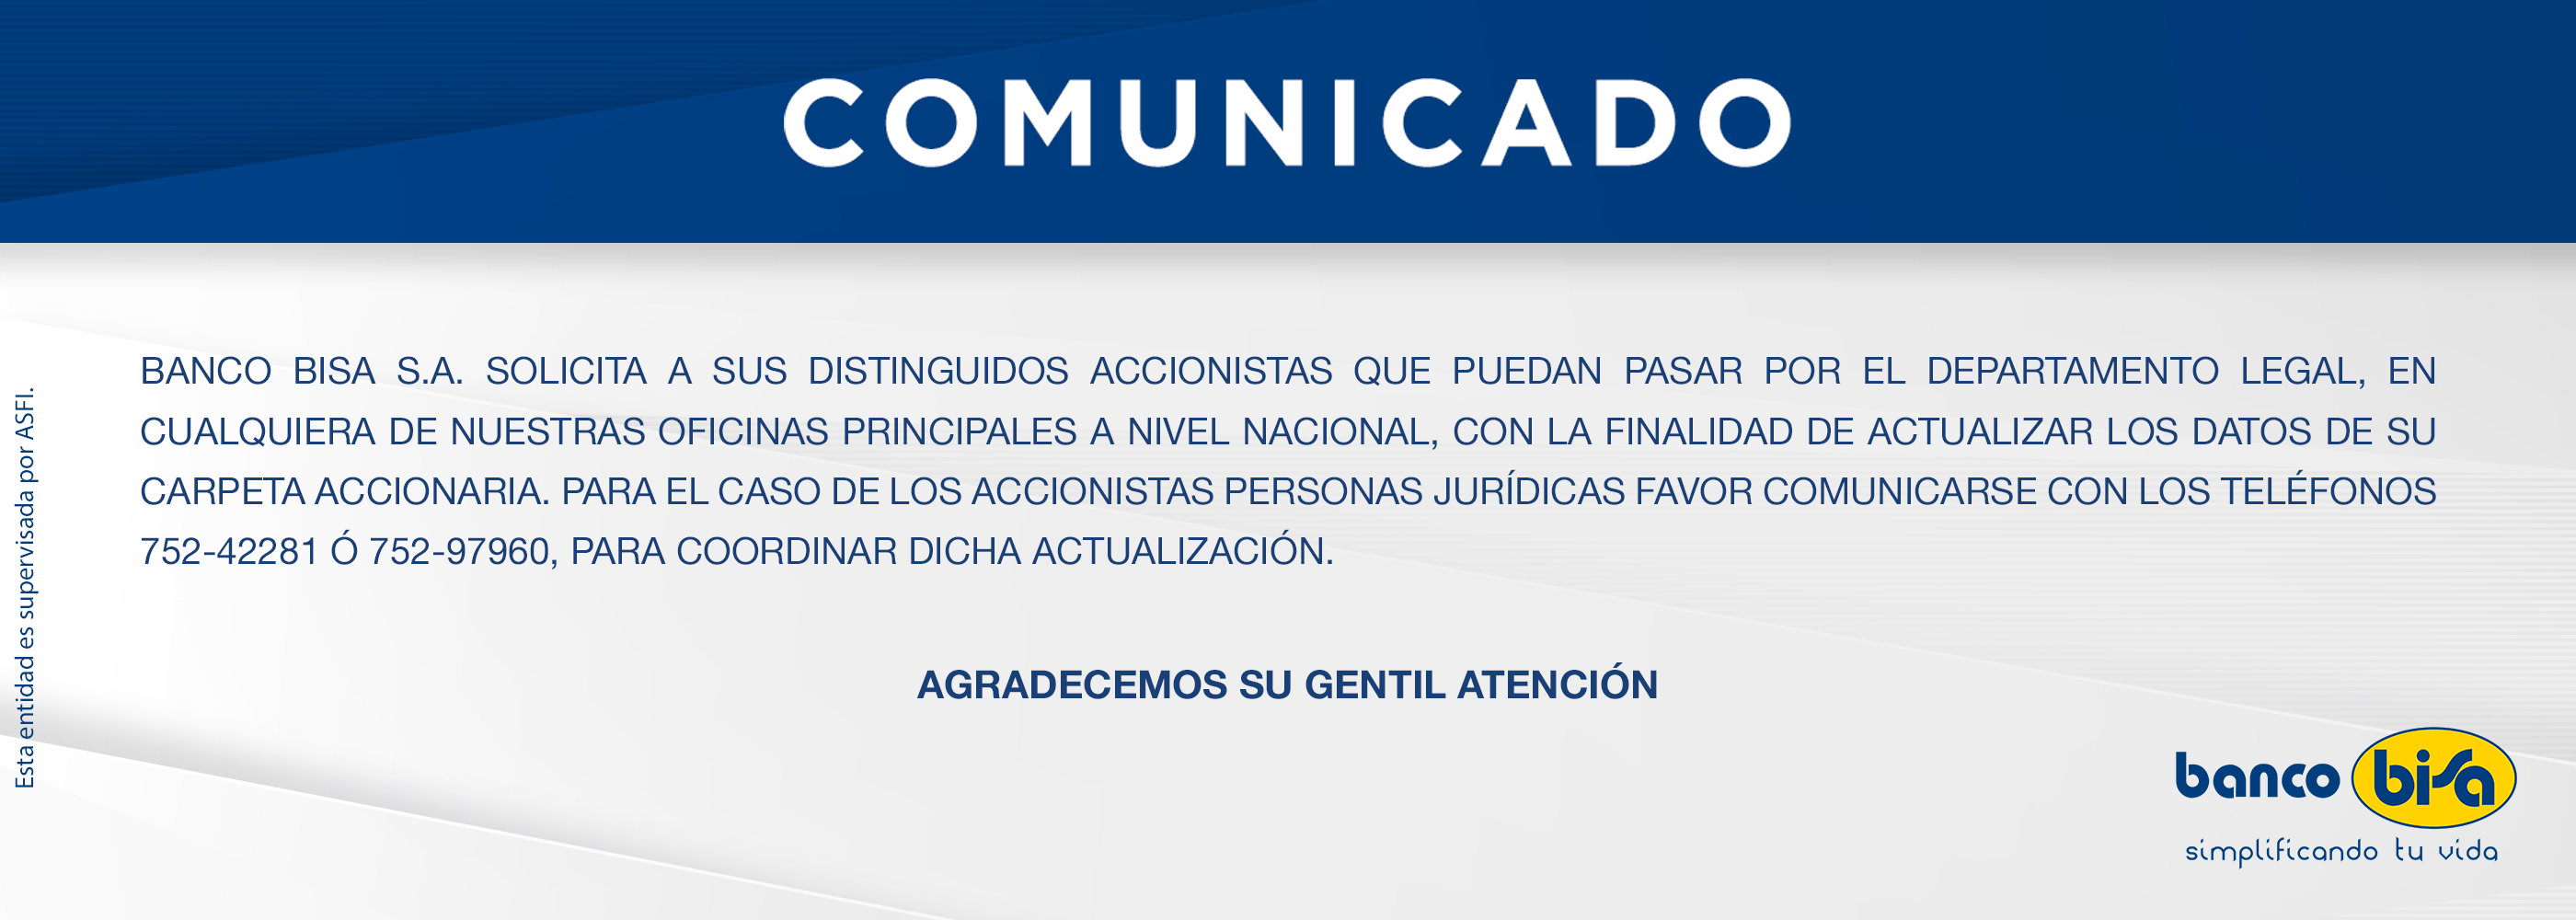 COMUNICADO_accionistas_2-2800x1000.png